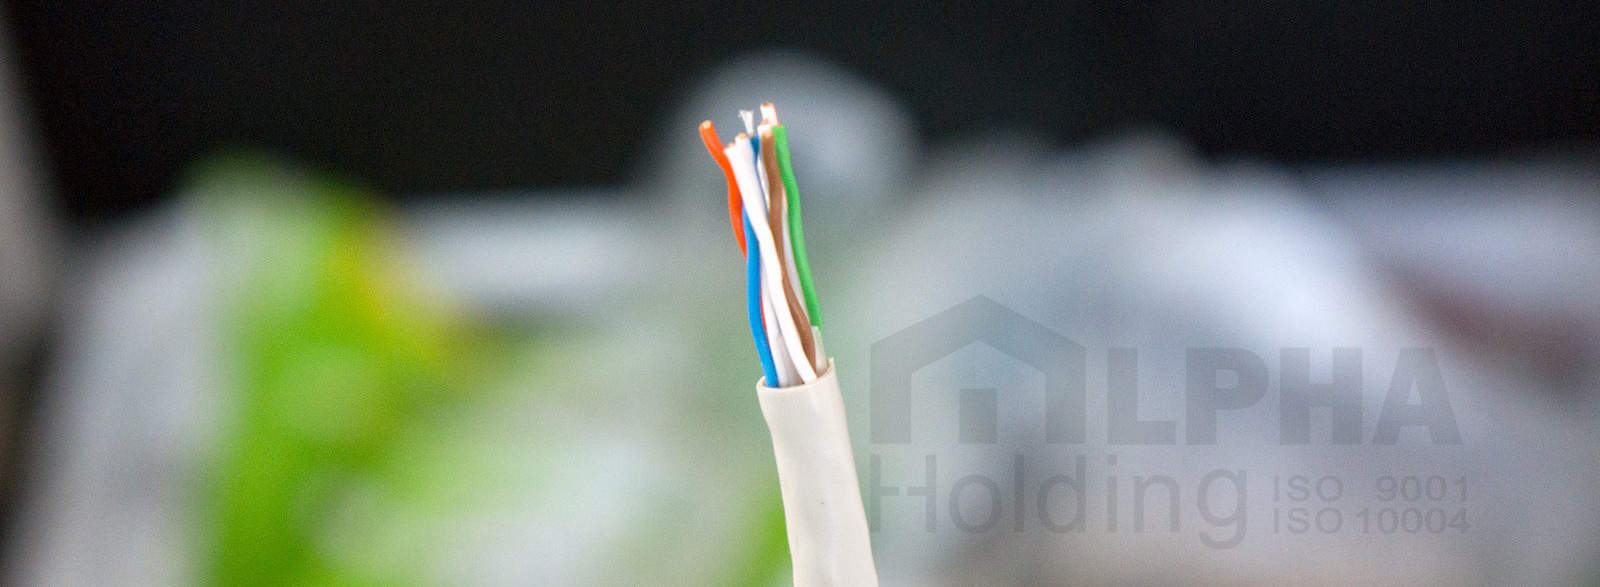 کابل های cat 7 از پر کاربرد ترین نوع کابل های شبکه می باشد.